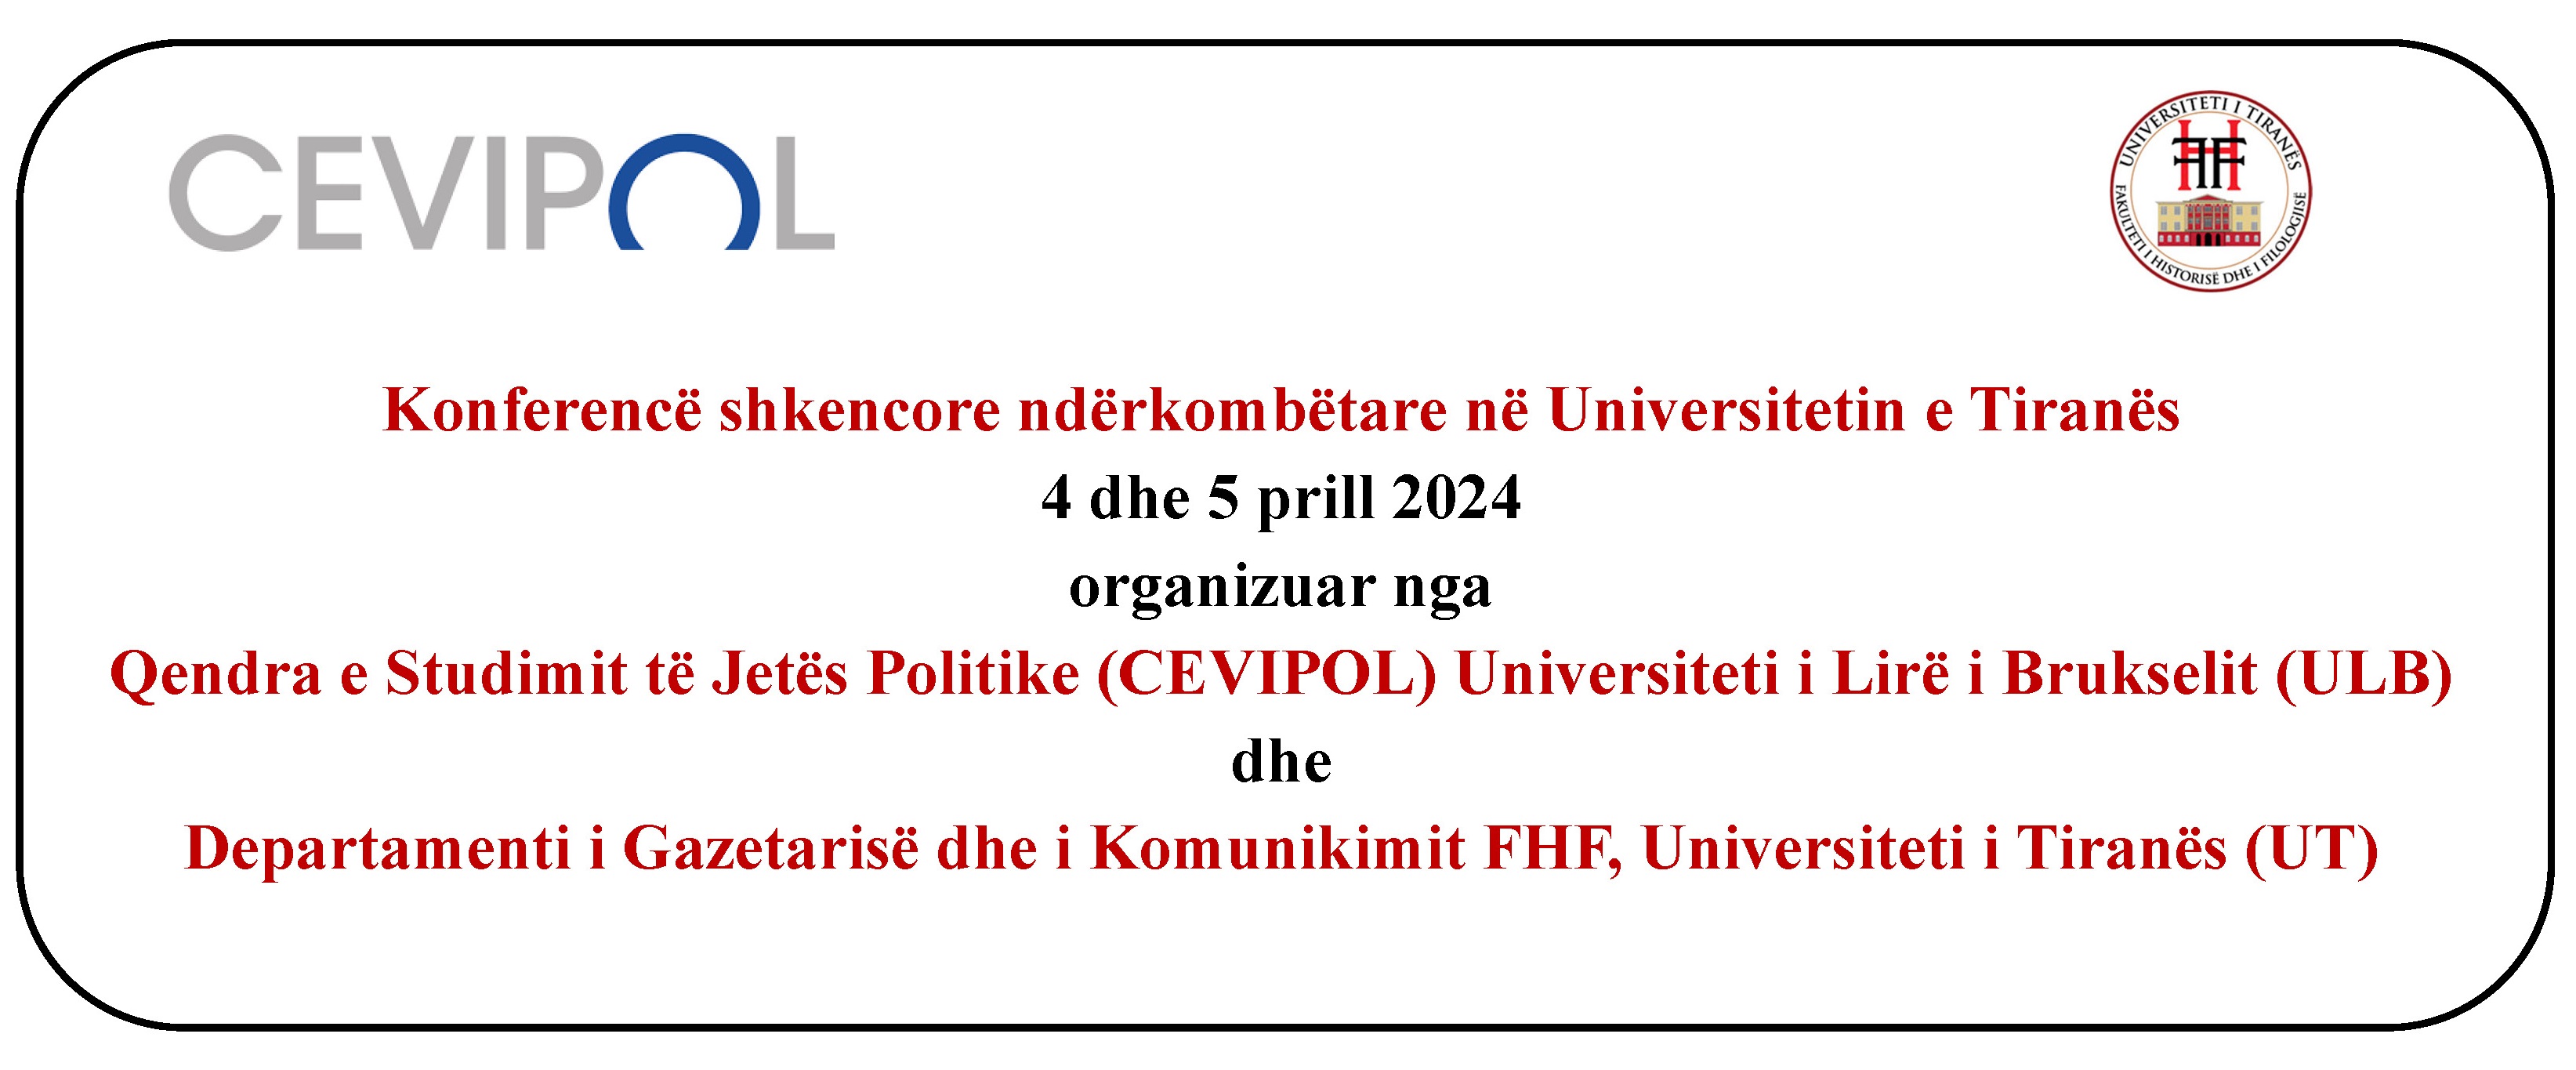 Konferencë shkencore ndërkombëtare në Universitetin e Tiranës, 4 dhe 5 prill 2024